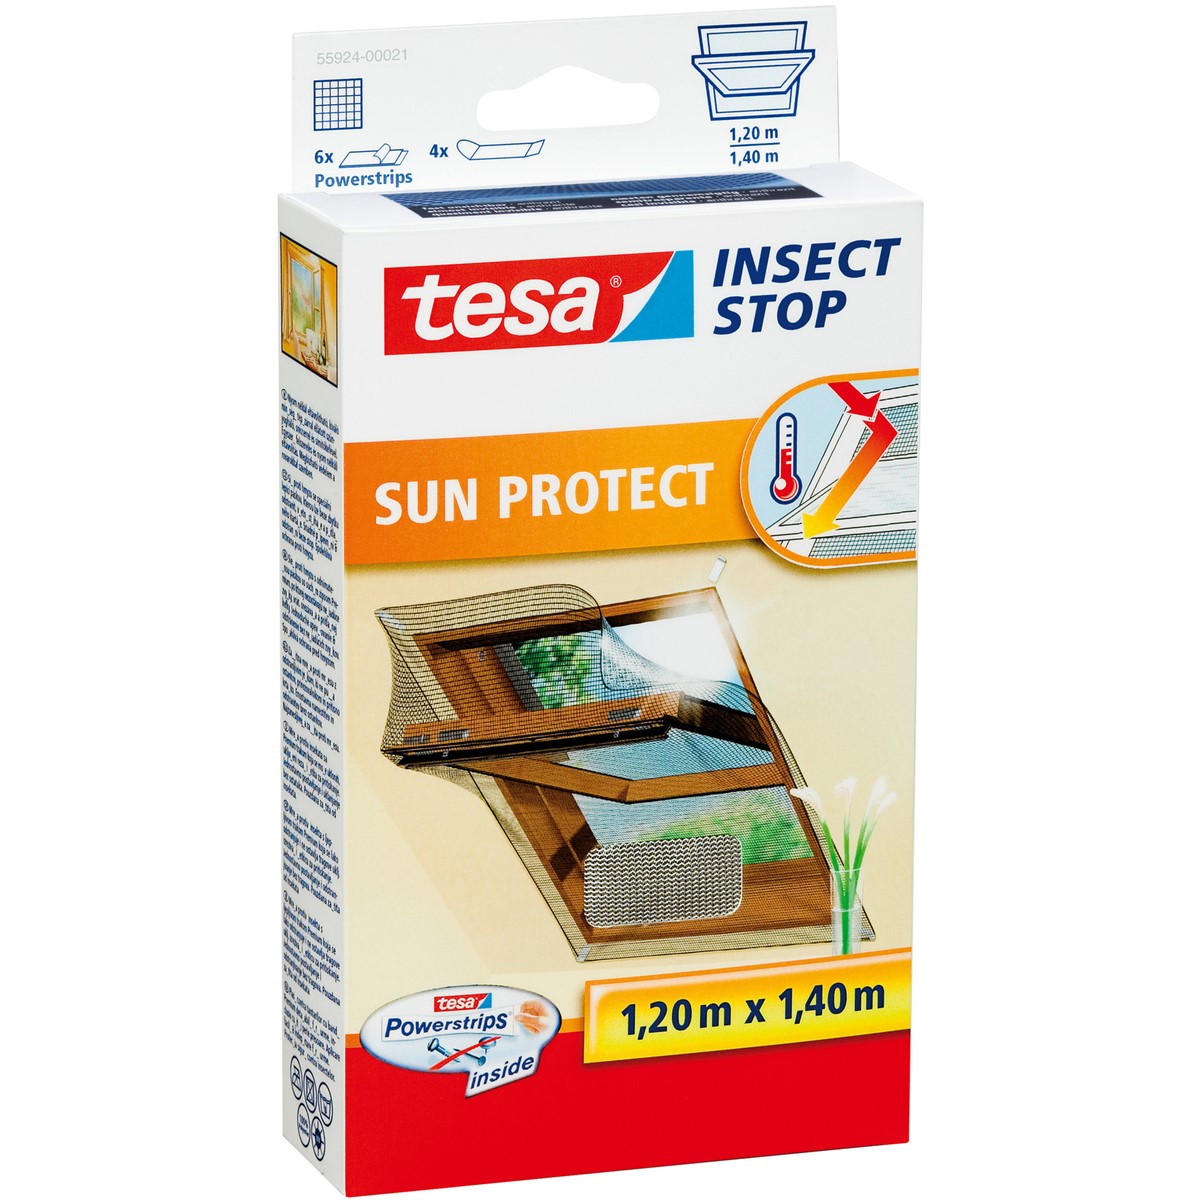 für Klett Stop 1,4m, 55924-00021 x 1,2m Insect PROTECT - SUN tesa Dachfenster, Fliegengitter anthrazit-metallic